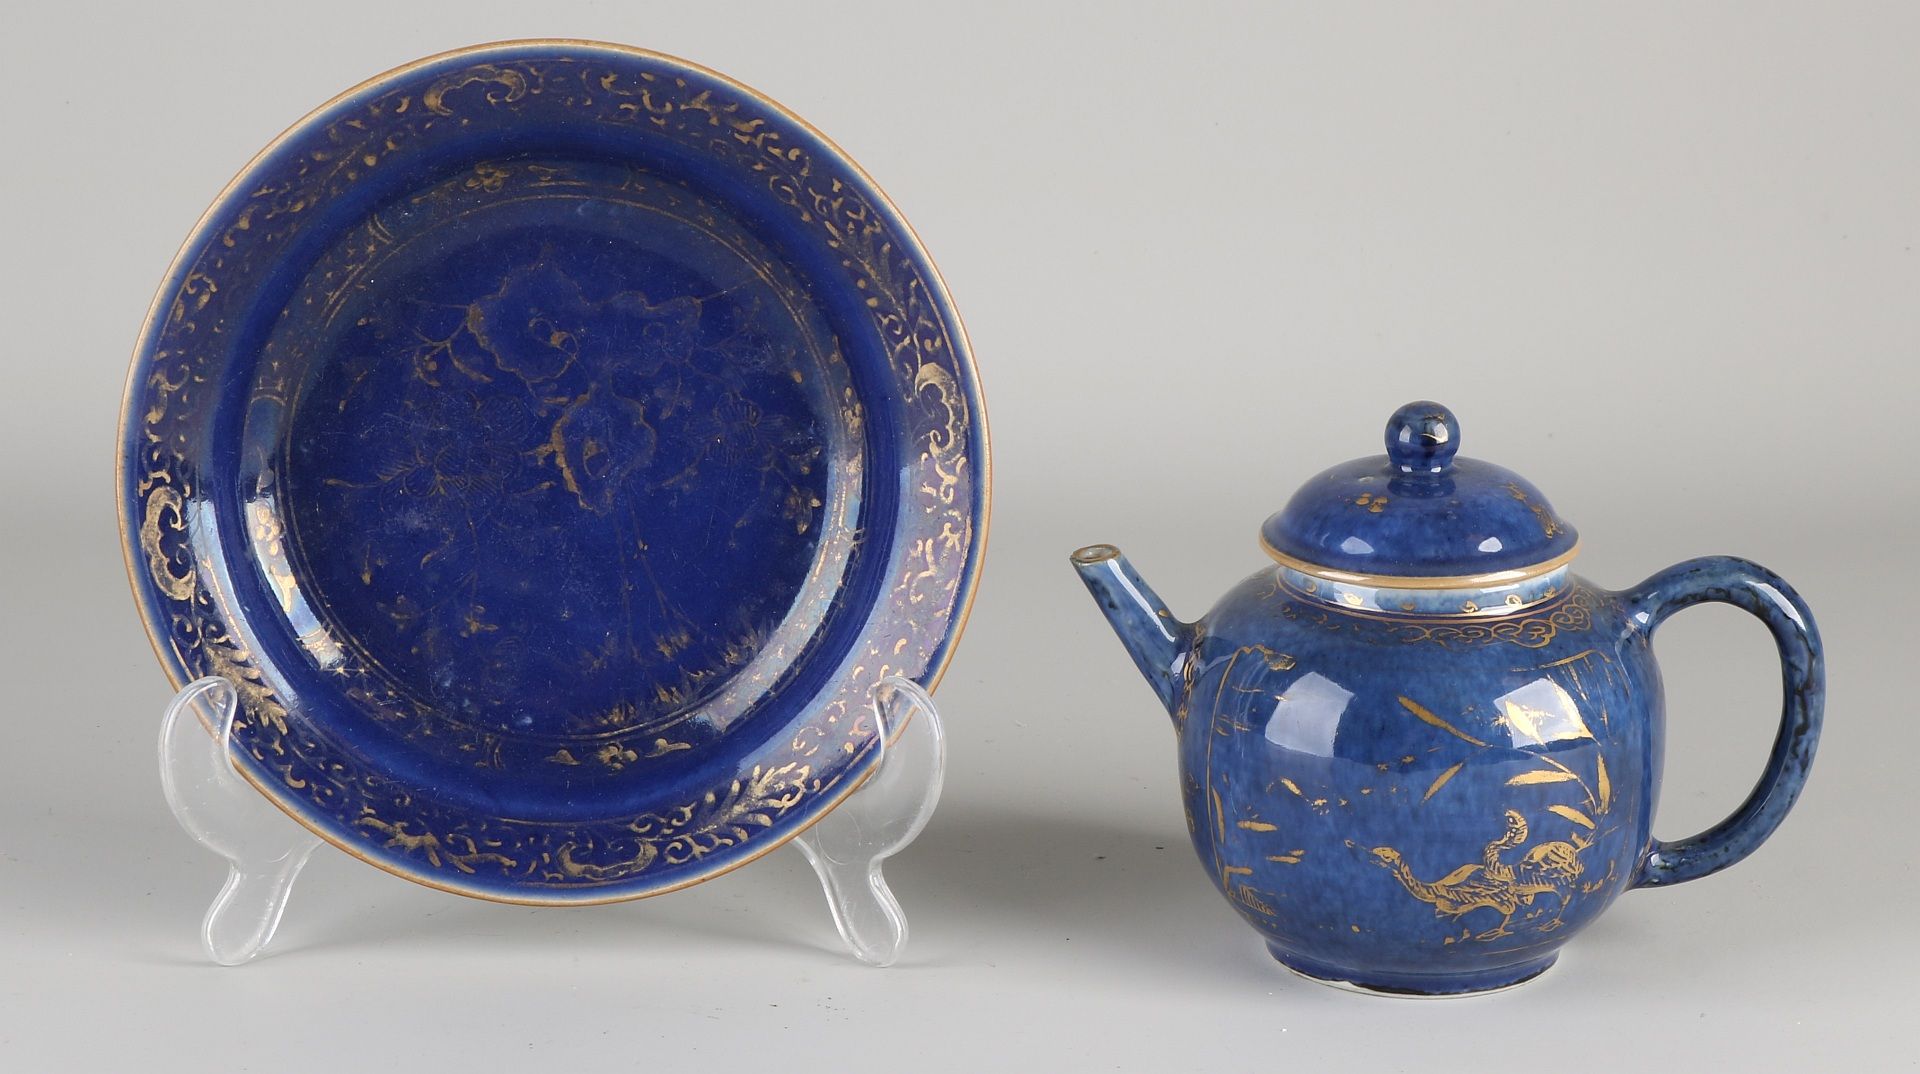 Chinesische Porzellanteekanne aus dem 19. Jahrhundert mit Untertasse. Blaue Glasur + Golddekor. A